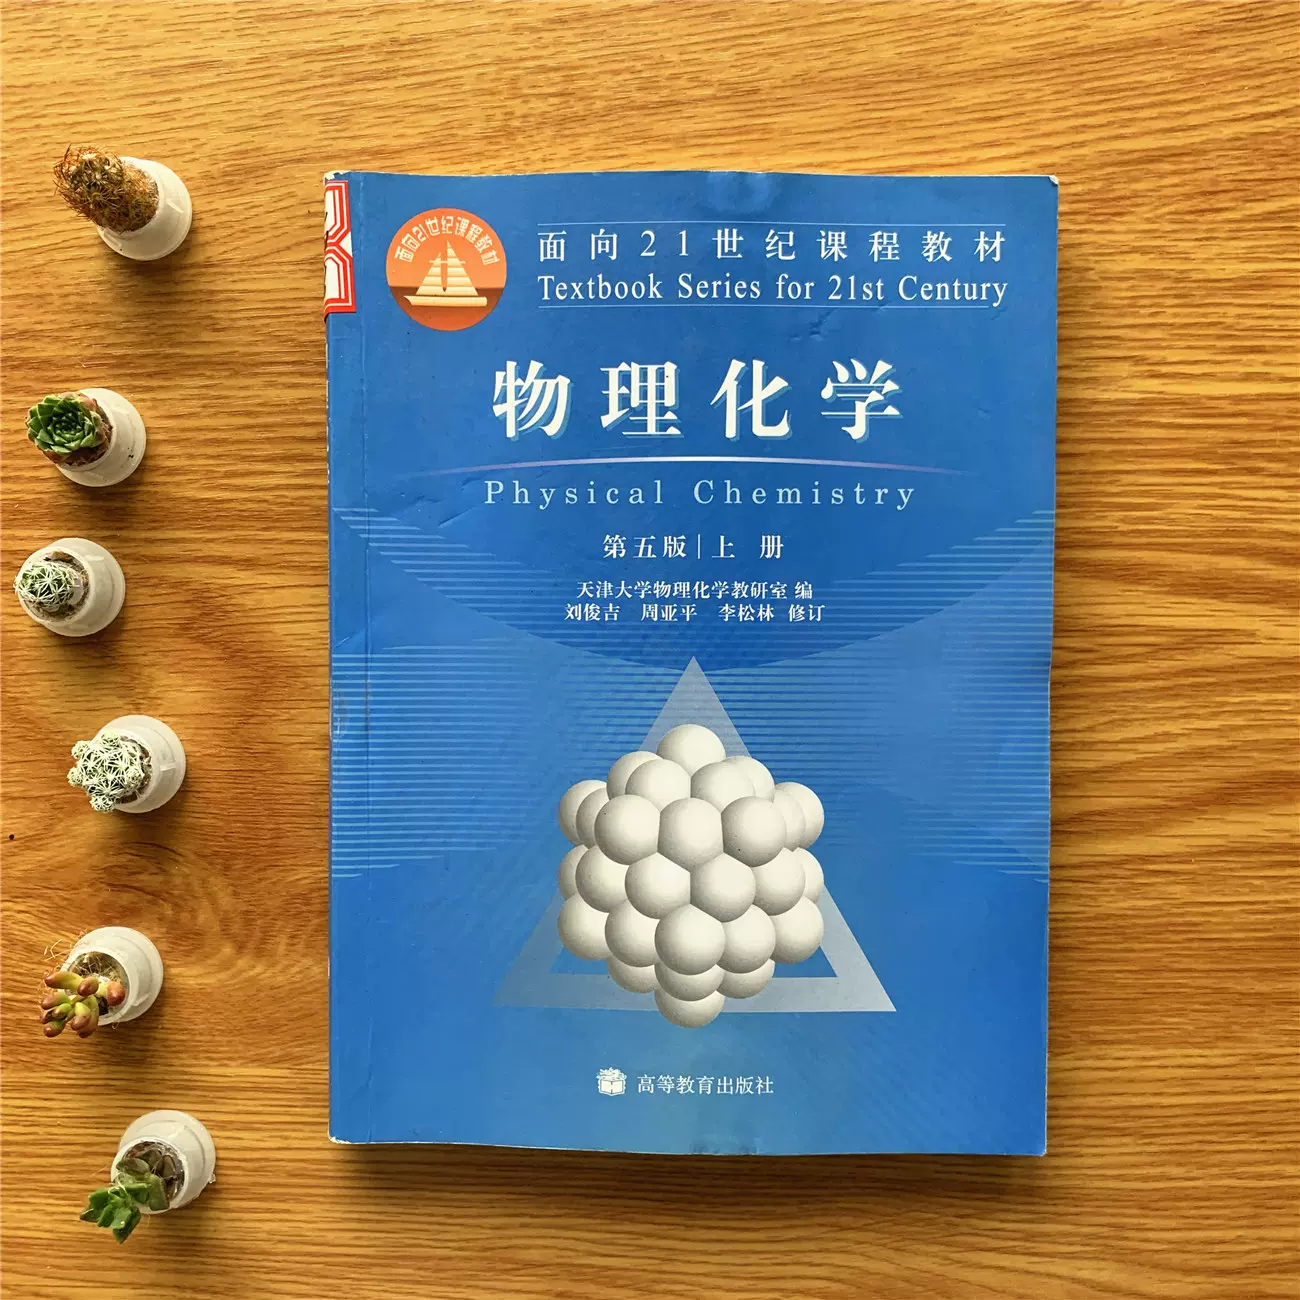 二手正版物理化学上五版9787040262797天津大学物理化学教研室-Taobao